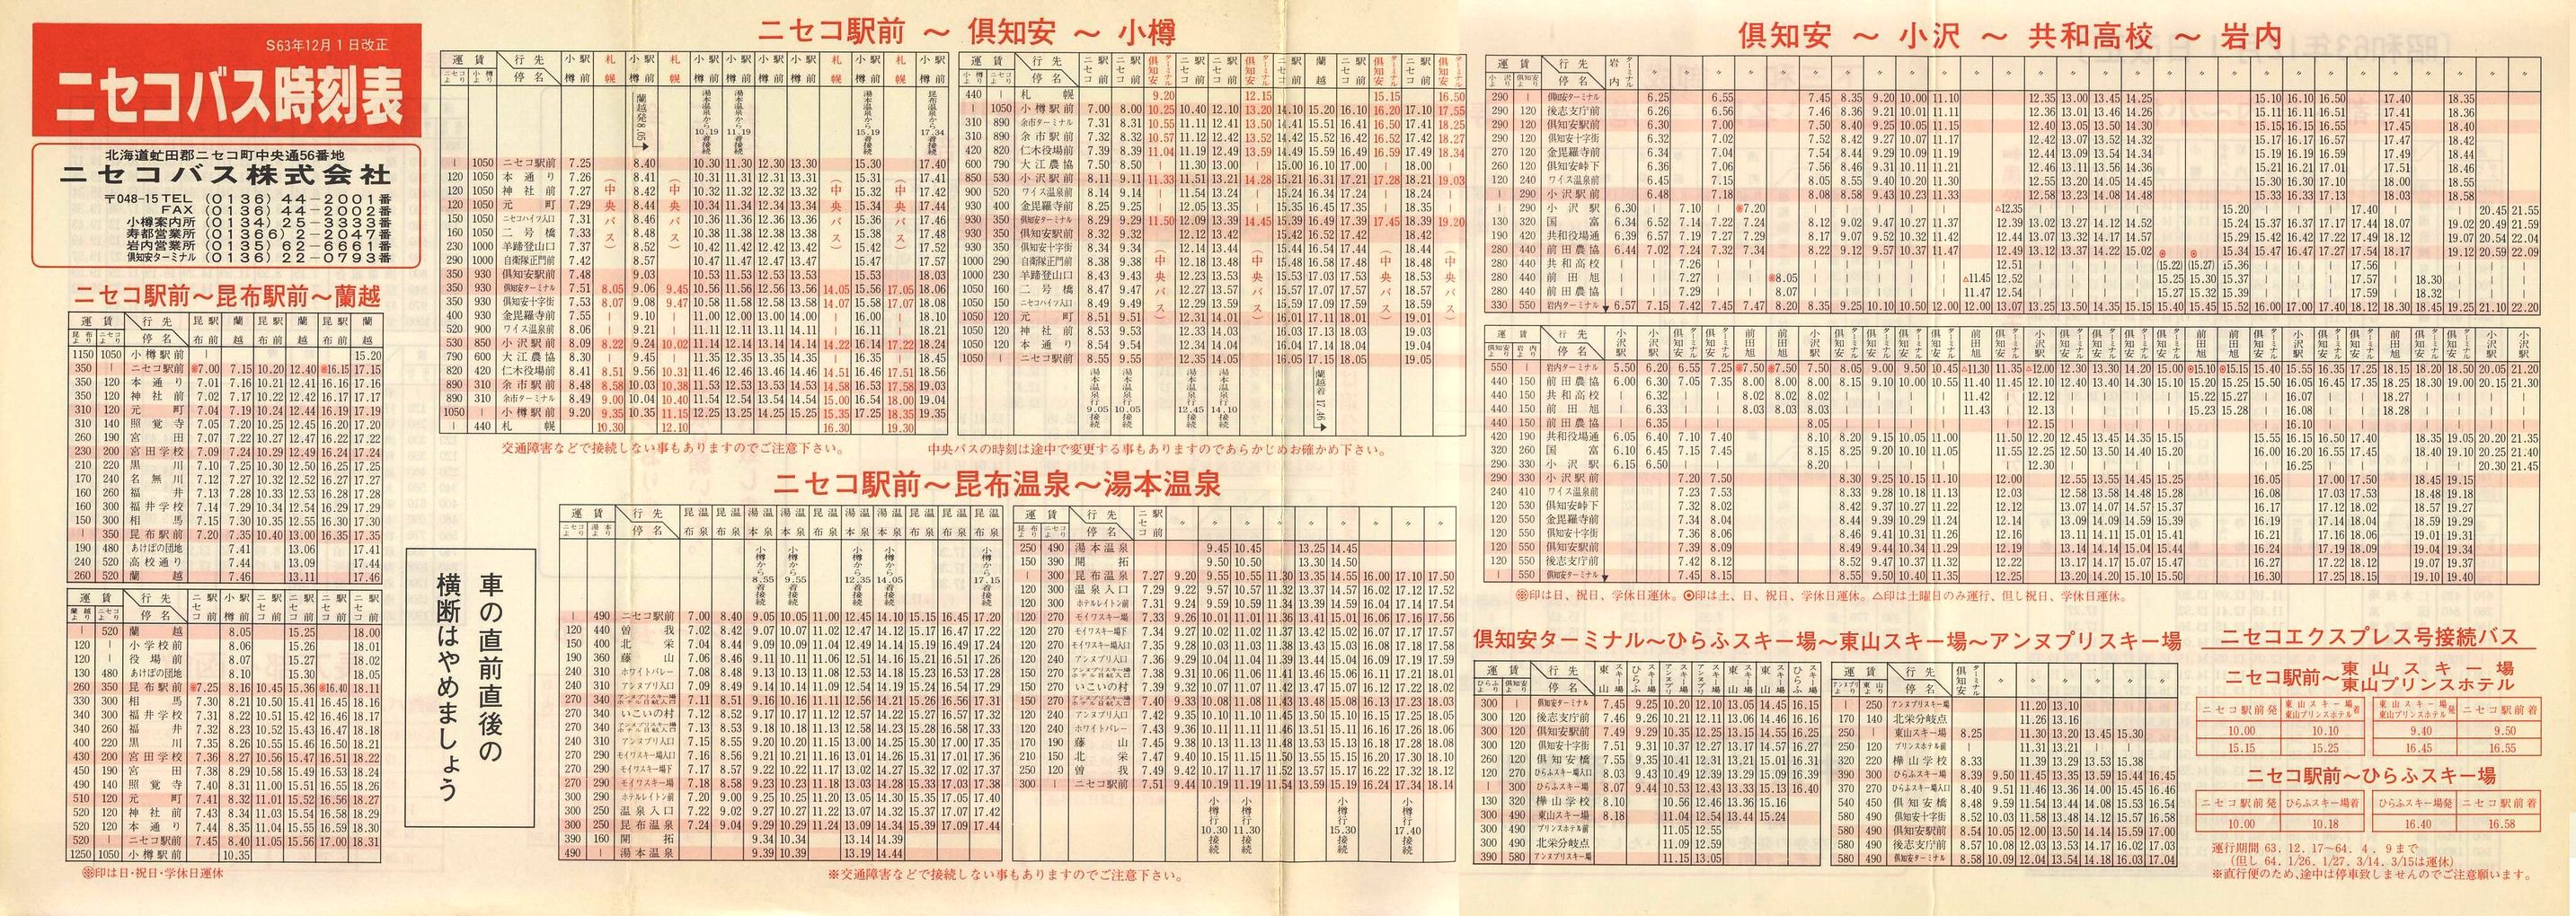 1988-12-01改正_ニセコバス_時刻表表面